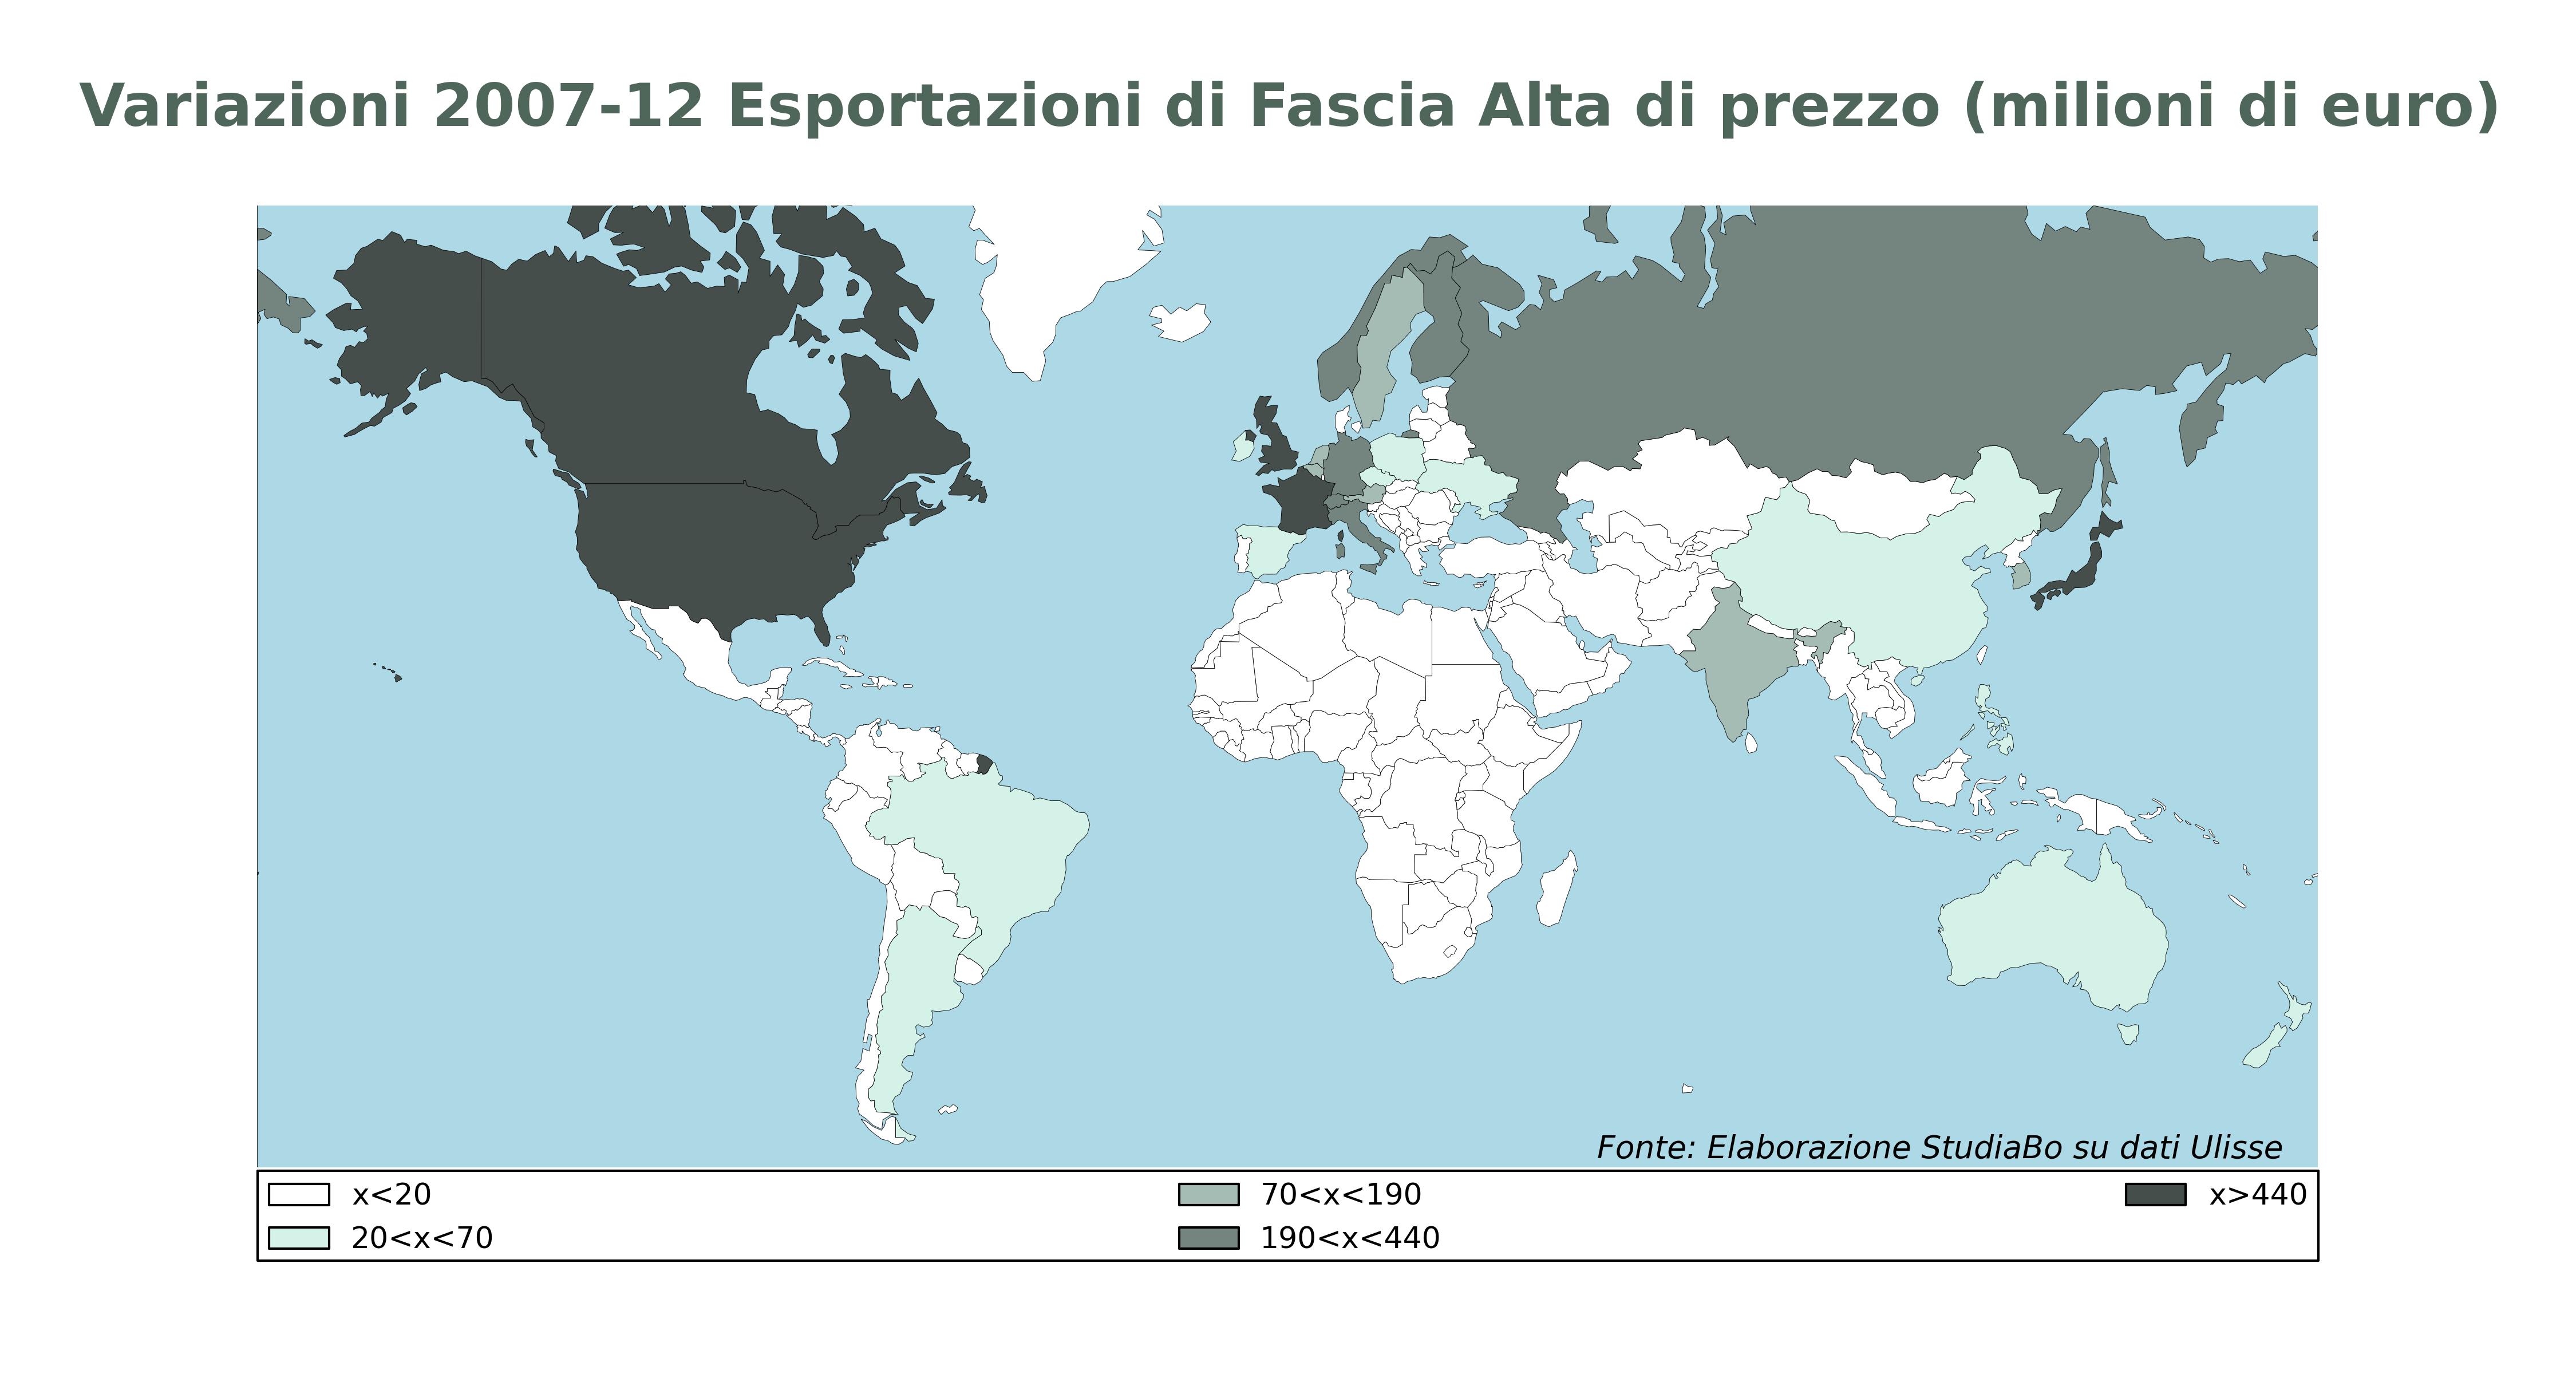 Variazioni 2007-2012 Esportazioni di Fascia Alta di prezzo (fonte: Sistema Informativo Ulisse)